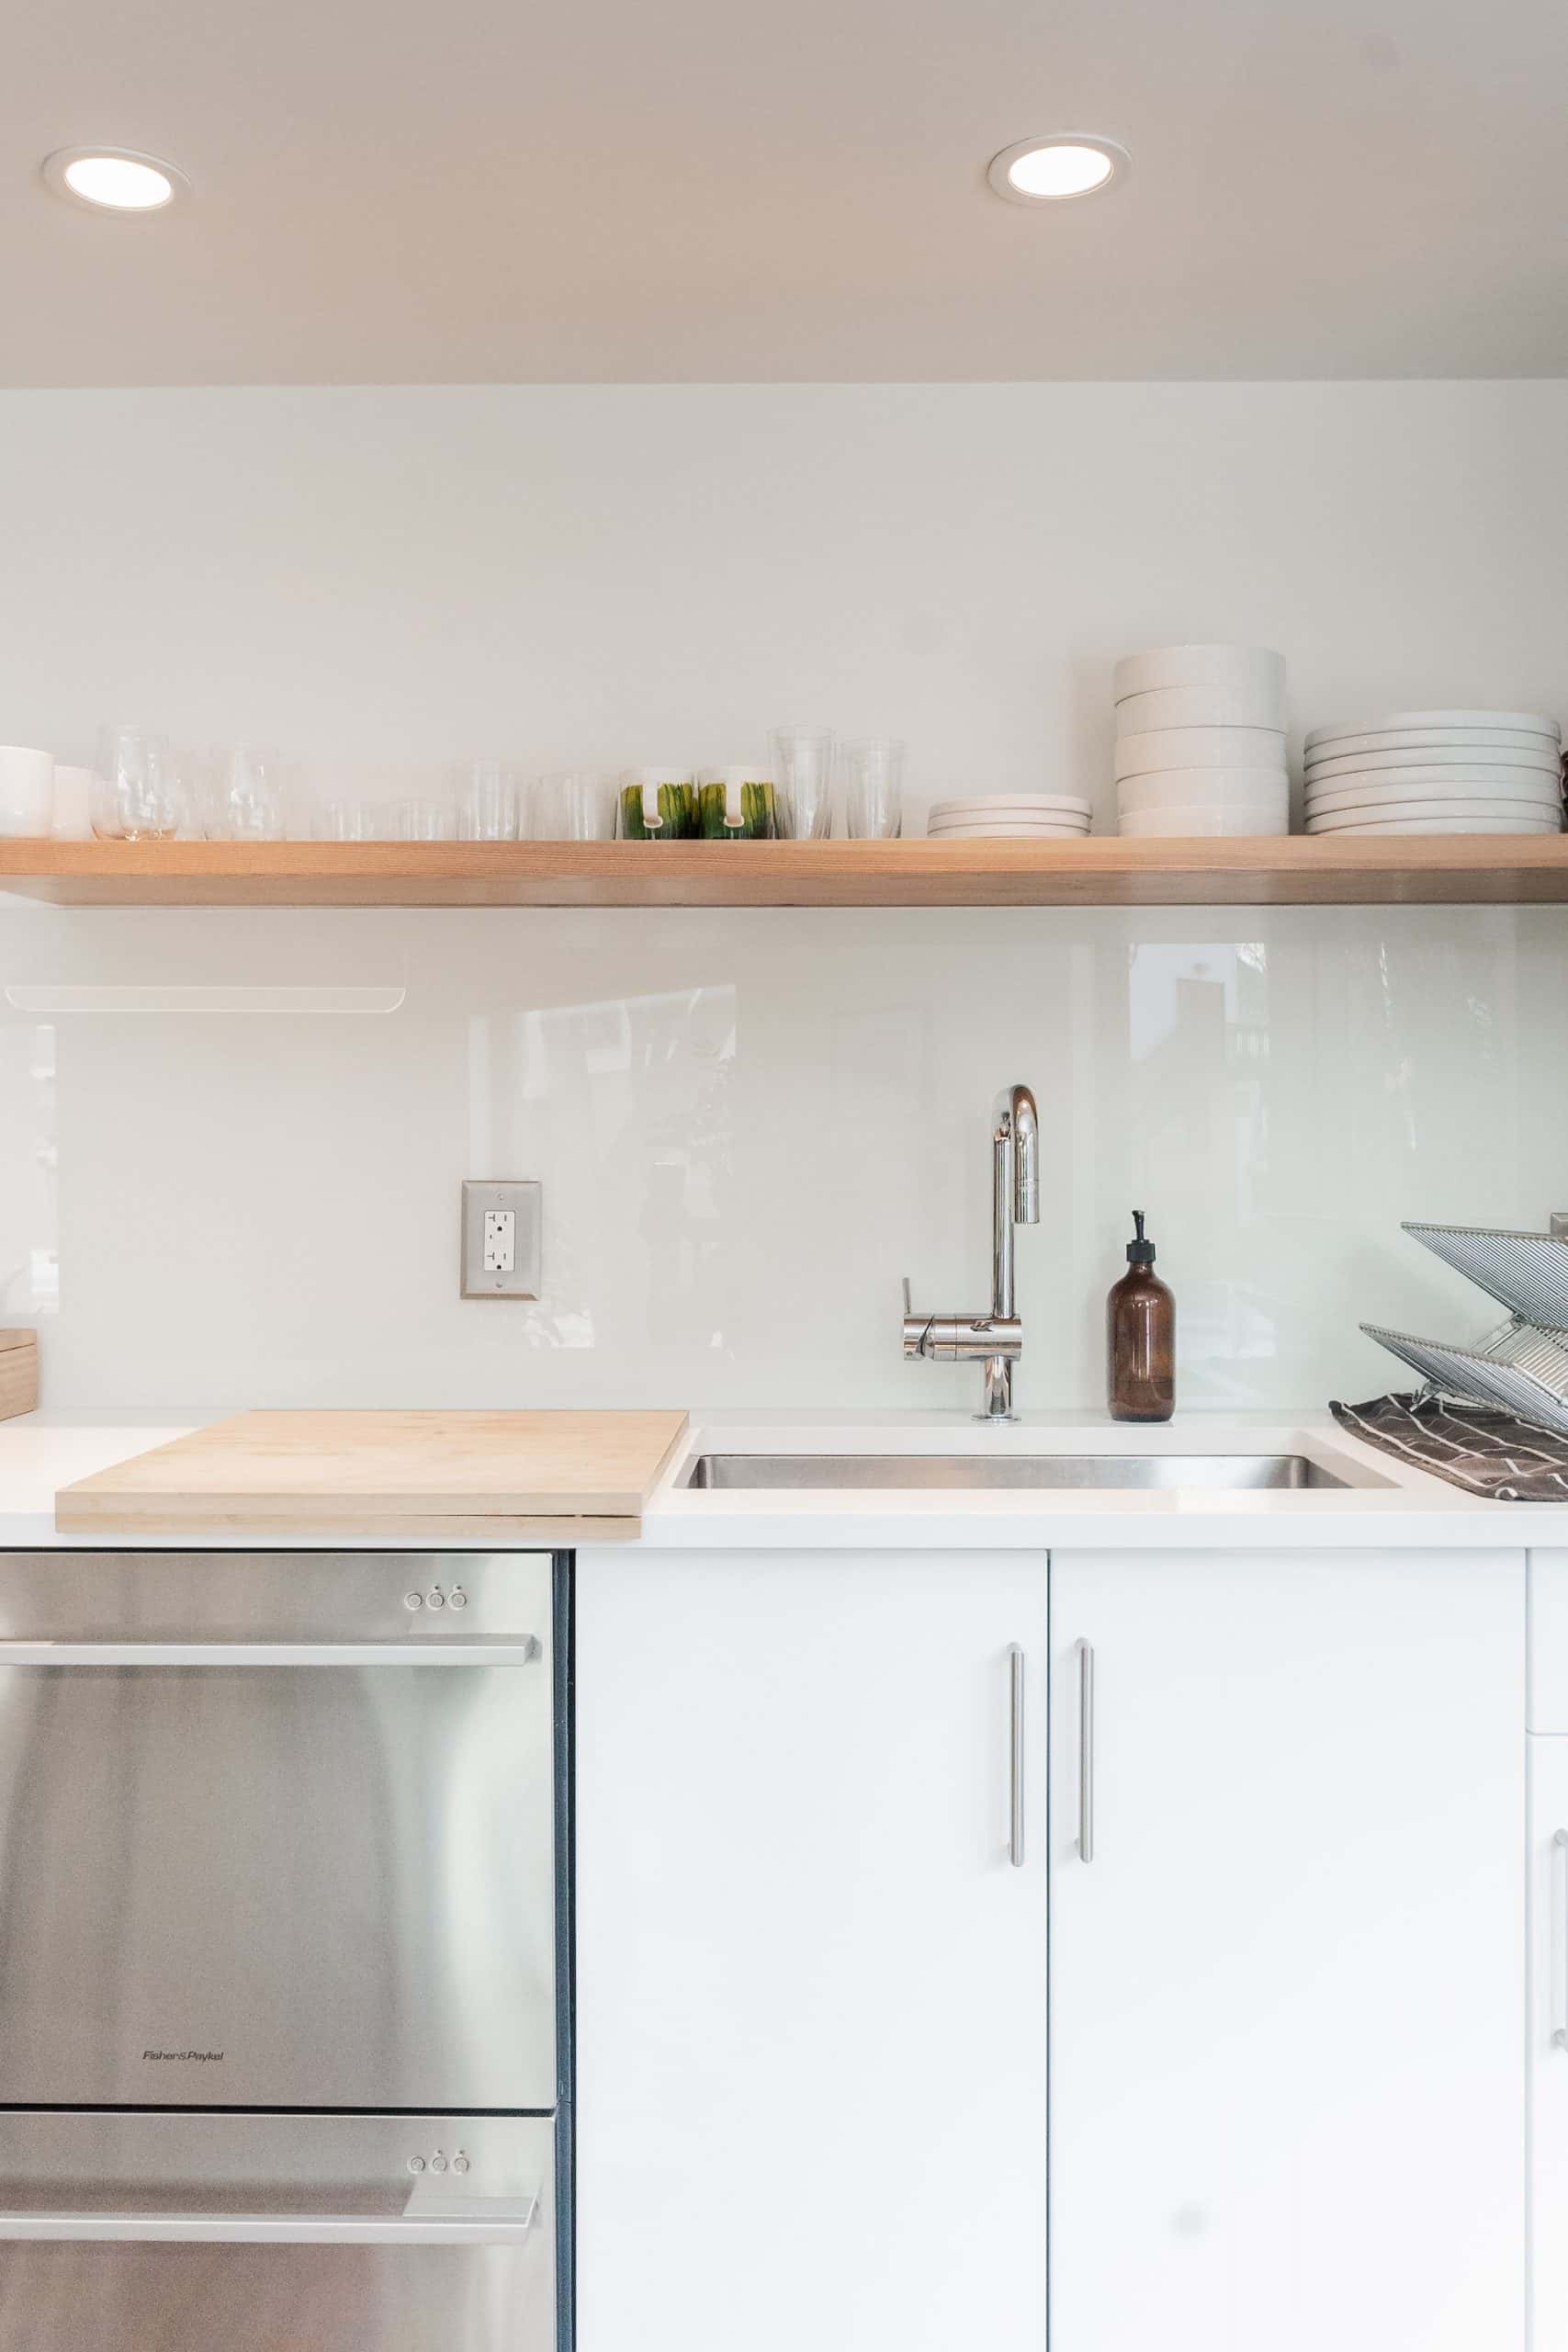 all-white kitchen sink design